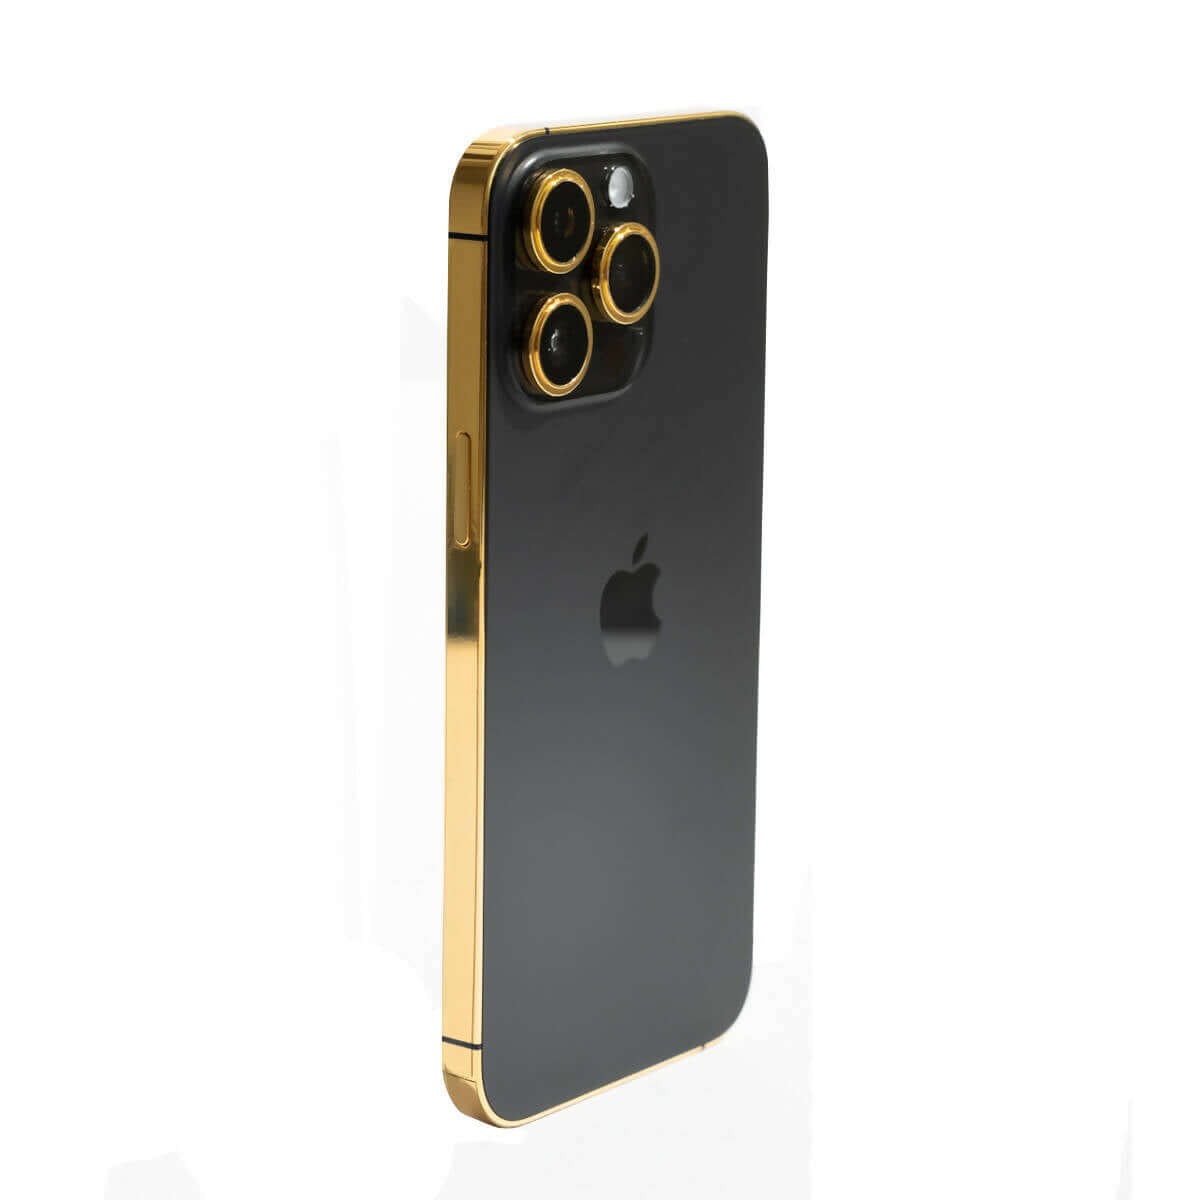 Apple iPhone 13 Pro Max - Graphite - 128 GB